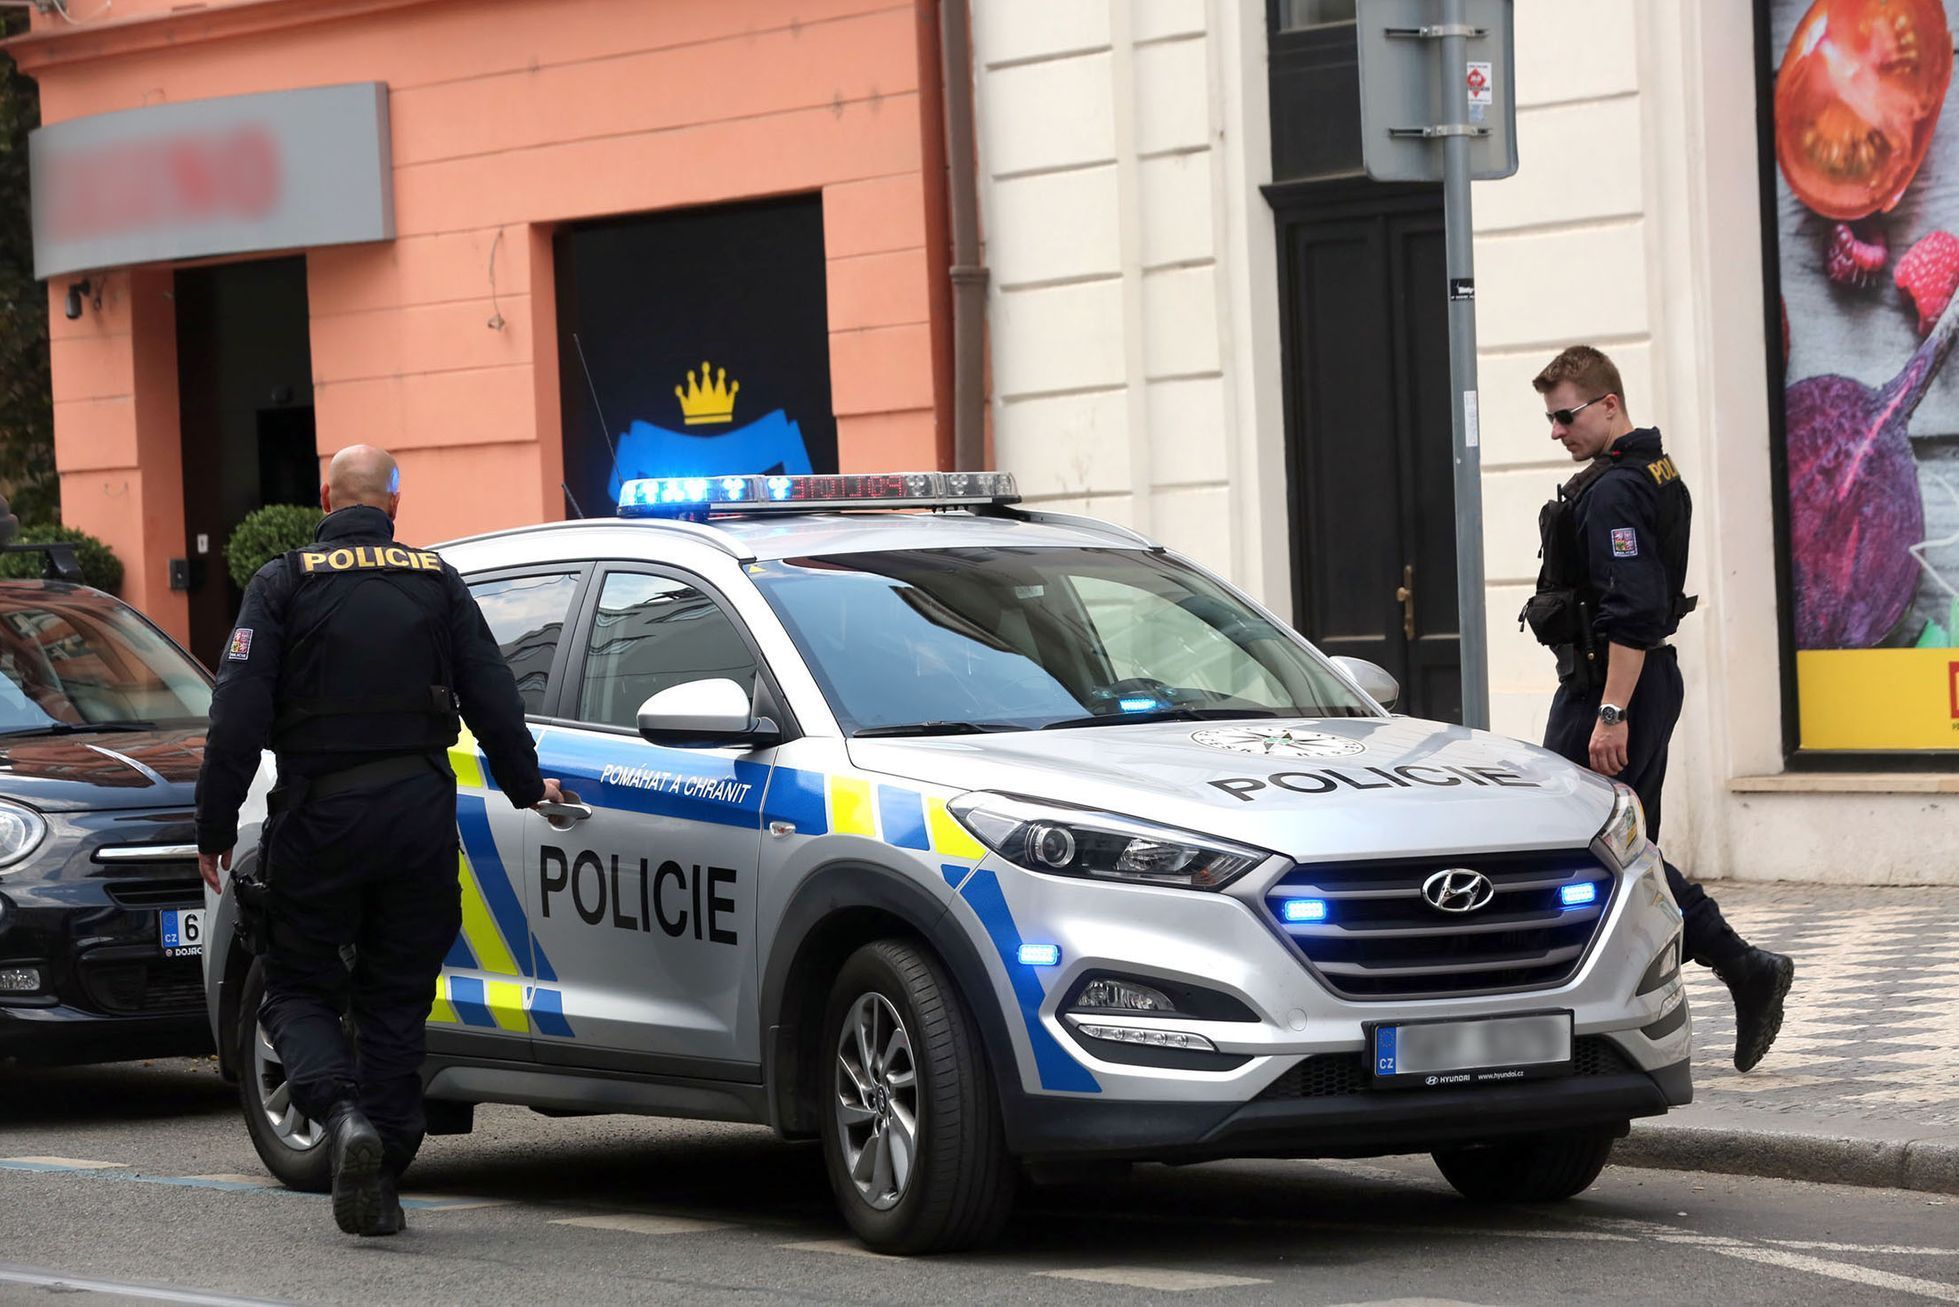 Policie ČR / Státní policie / Policejní auto / Policejní hlídka / Ulice / Policisté / Policista / Ilustrační foto / Praha / Léto / 2018 / 1